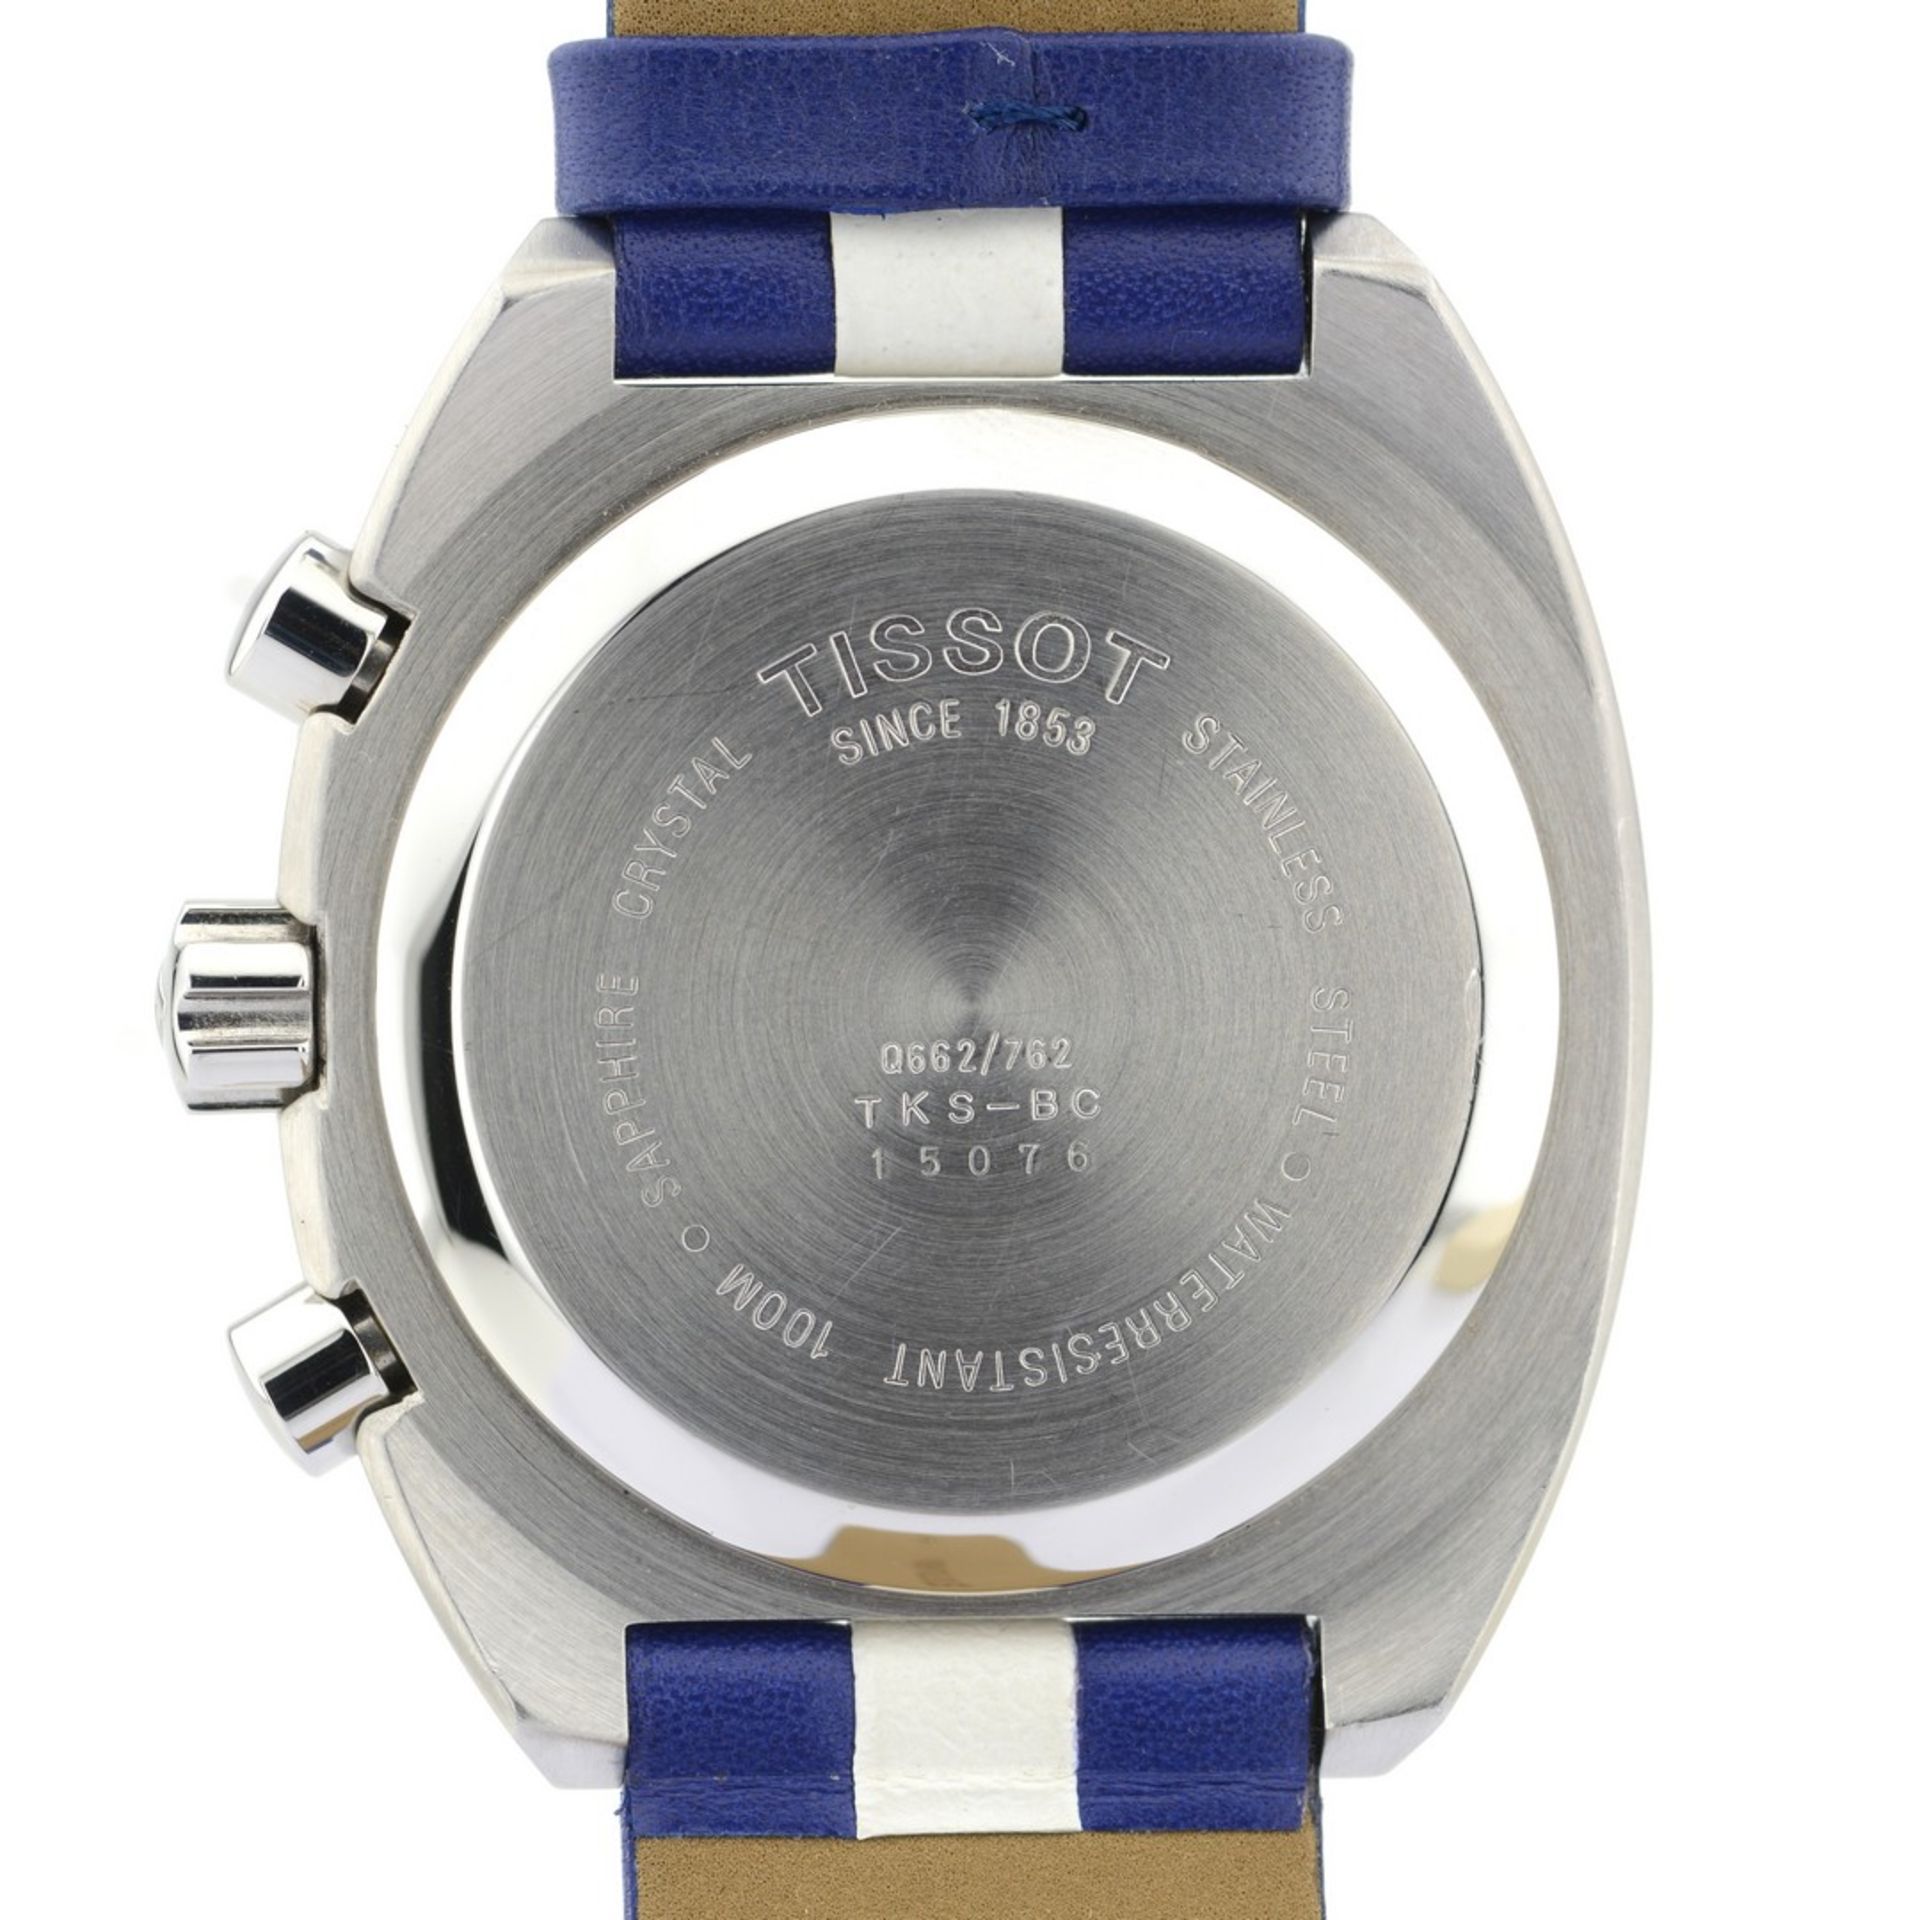 Tissot / Quickster (Unworn) - Gentlemen's Steel Wristwatch - Image 7 of 9